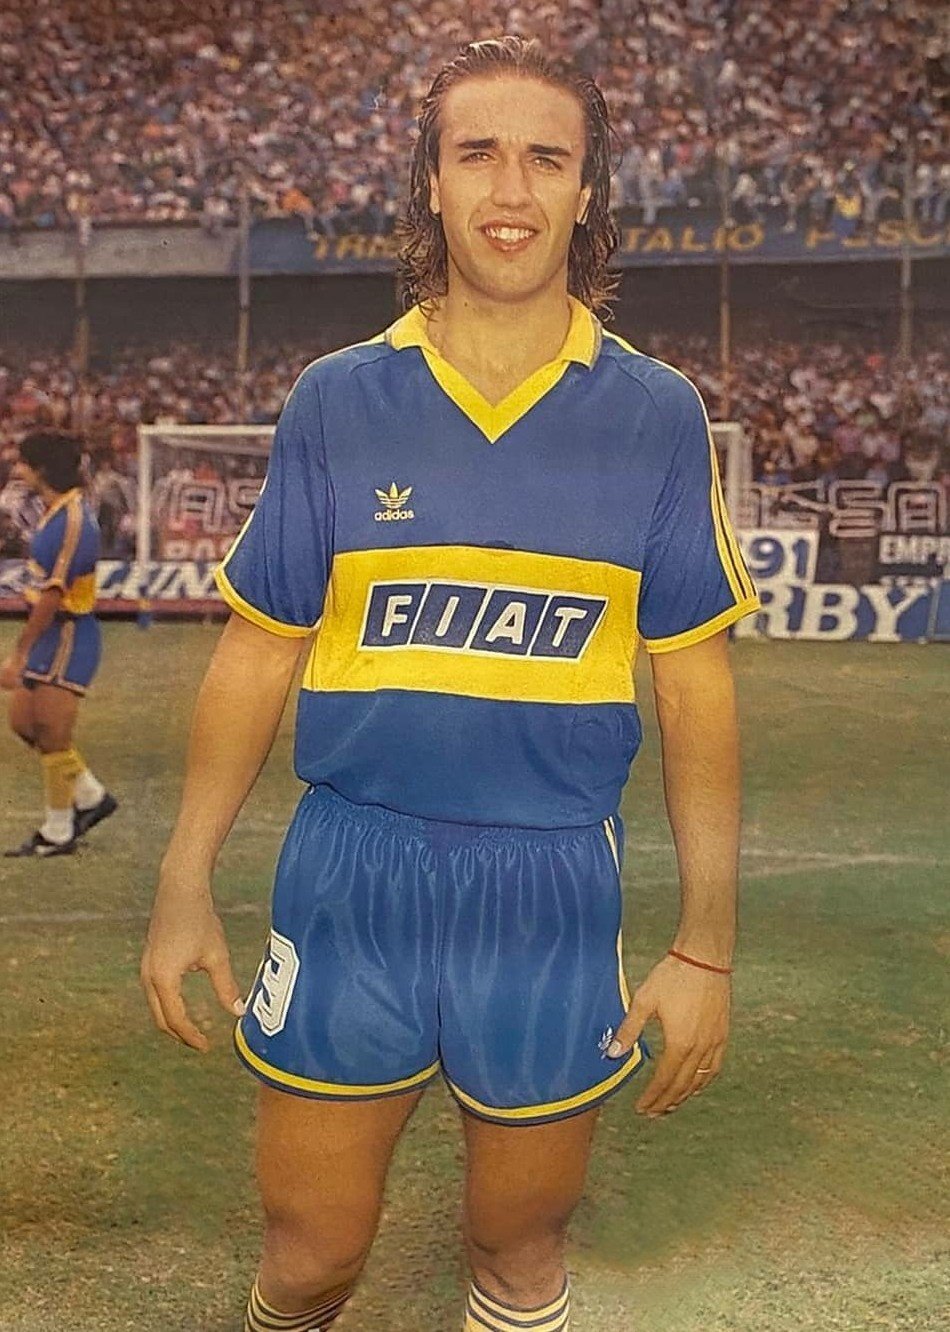 MotherSoccer على X: "Gabriel Batistuta (1989) Boca Juniors #Batigol  https://t.co/CZyB1q6vS7" / X